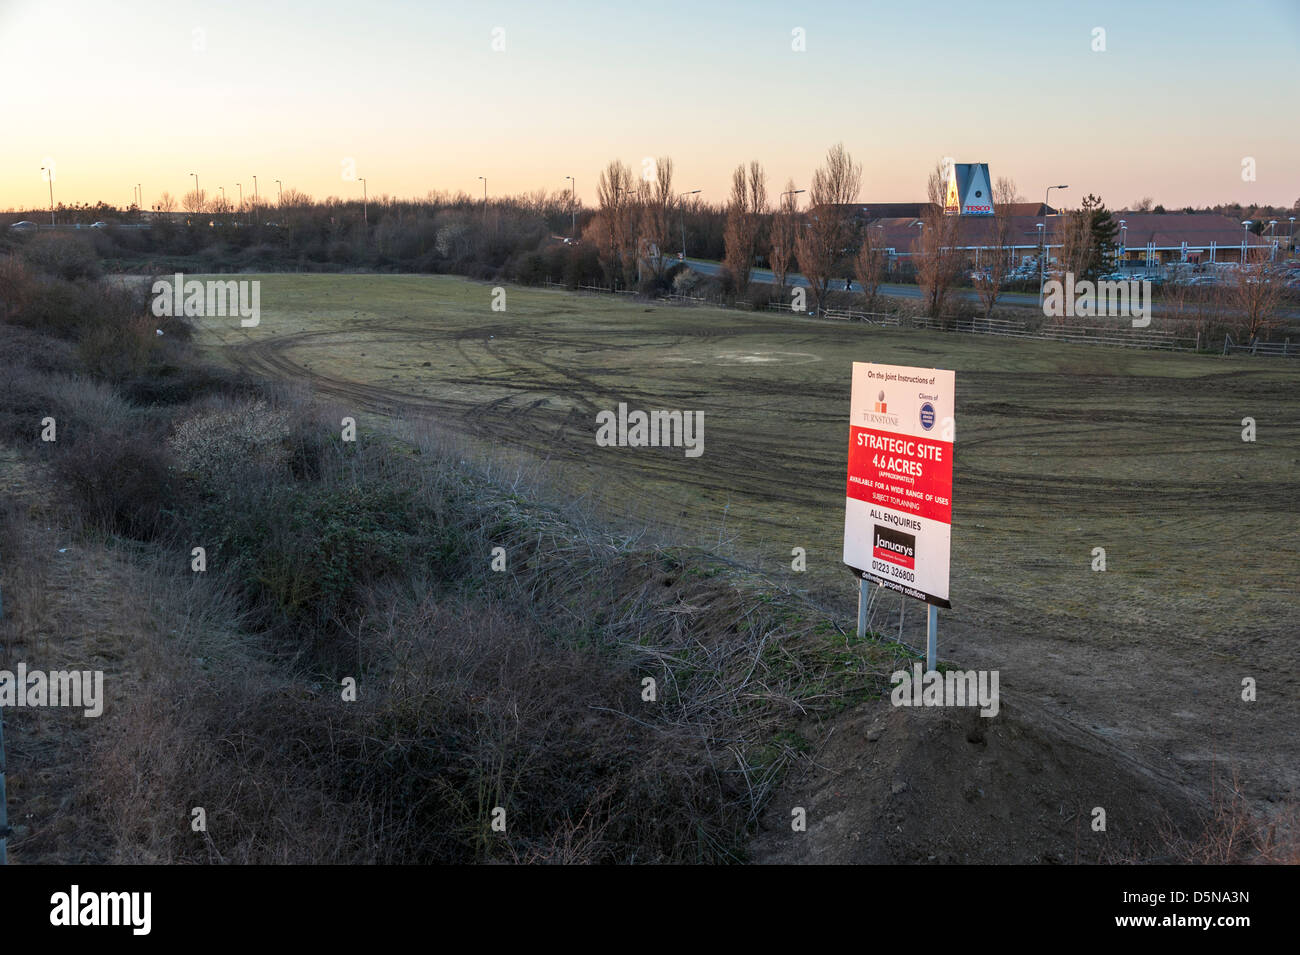 Ein Grundstück von Baugrundstücken für Verkauf bei Cambridge UK mit für Verkauf Board annonciert Stockfoto